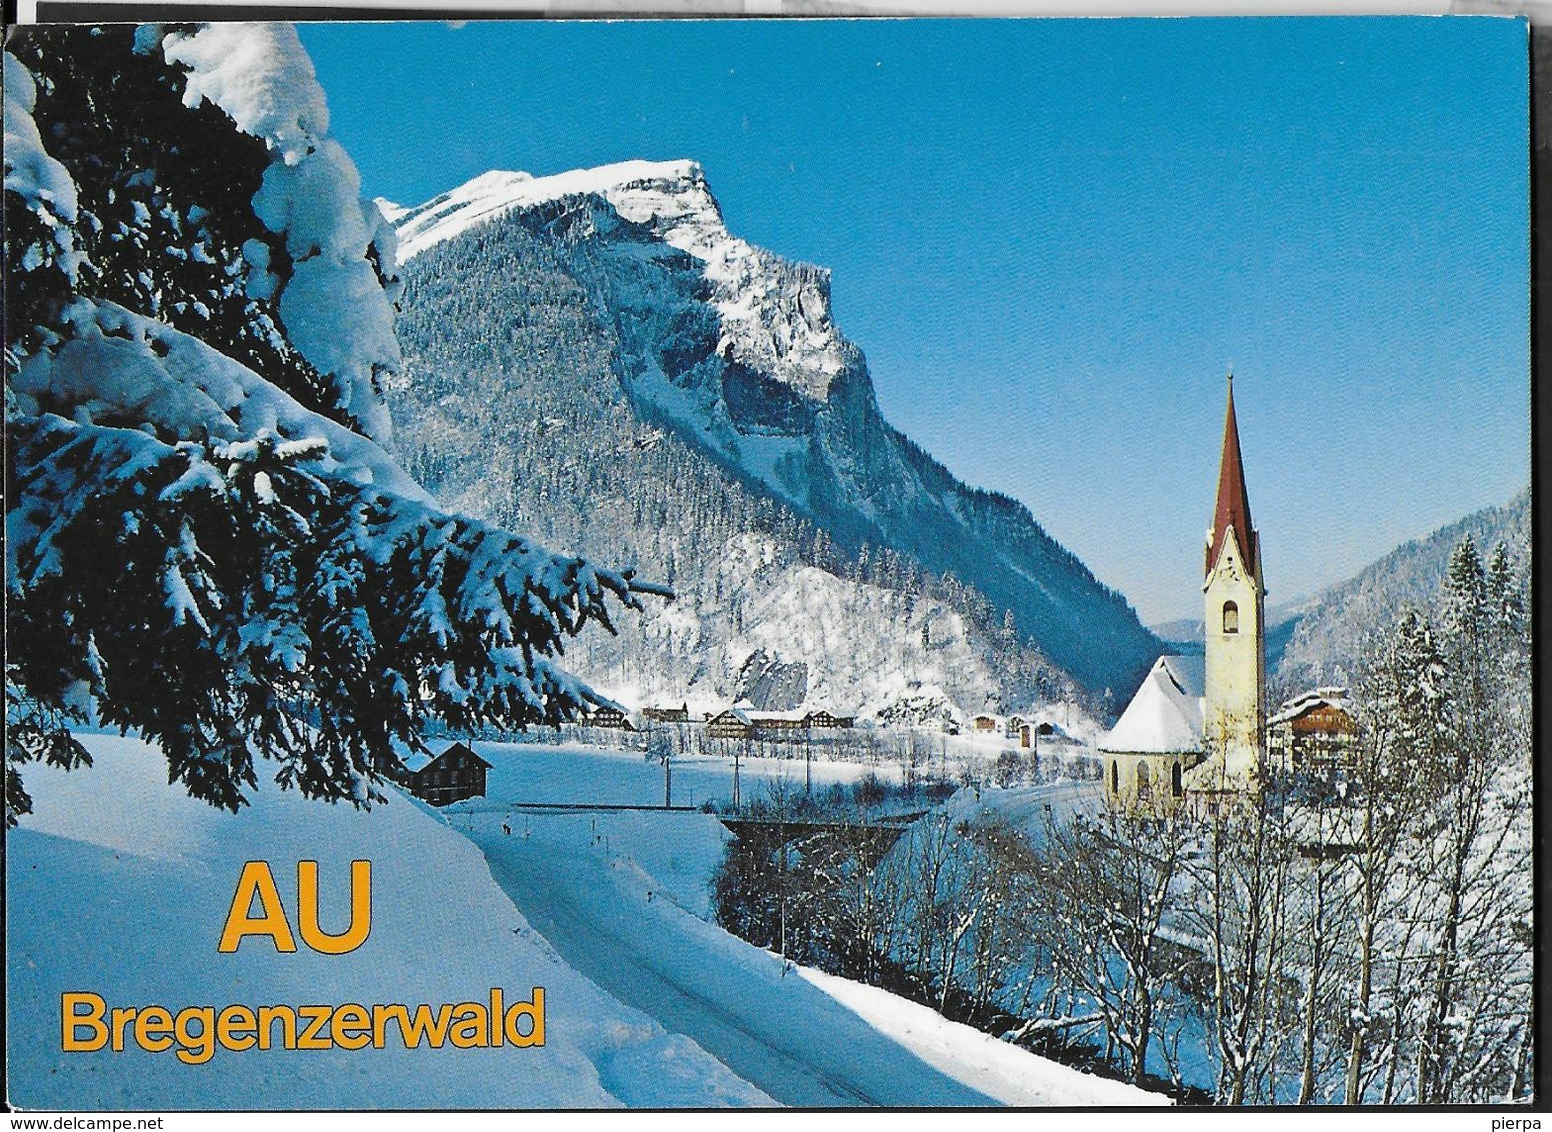 AUSTRIA - AU IM BREGENZERWALD - PAESAGGIO INVERNALE - SCRITTA AL RETRO - Bregenzerwaldorte